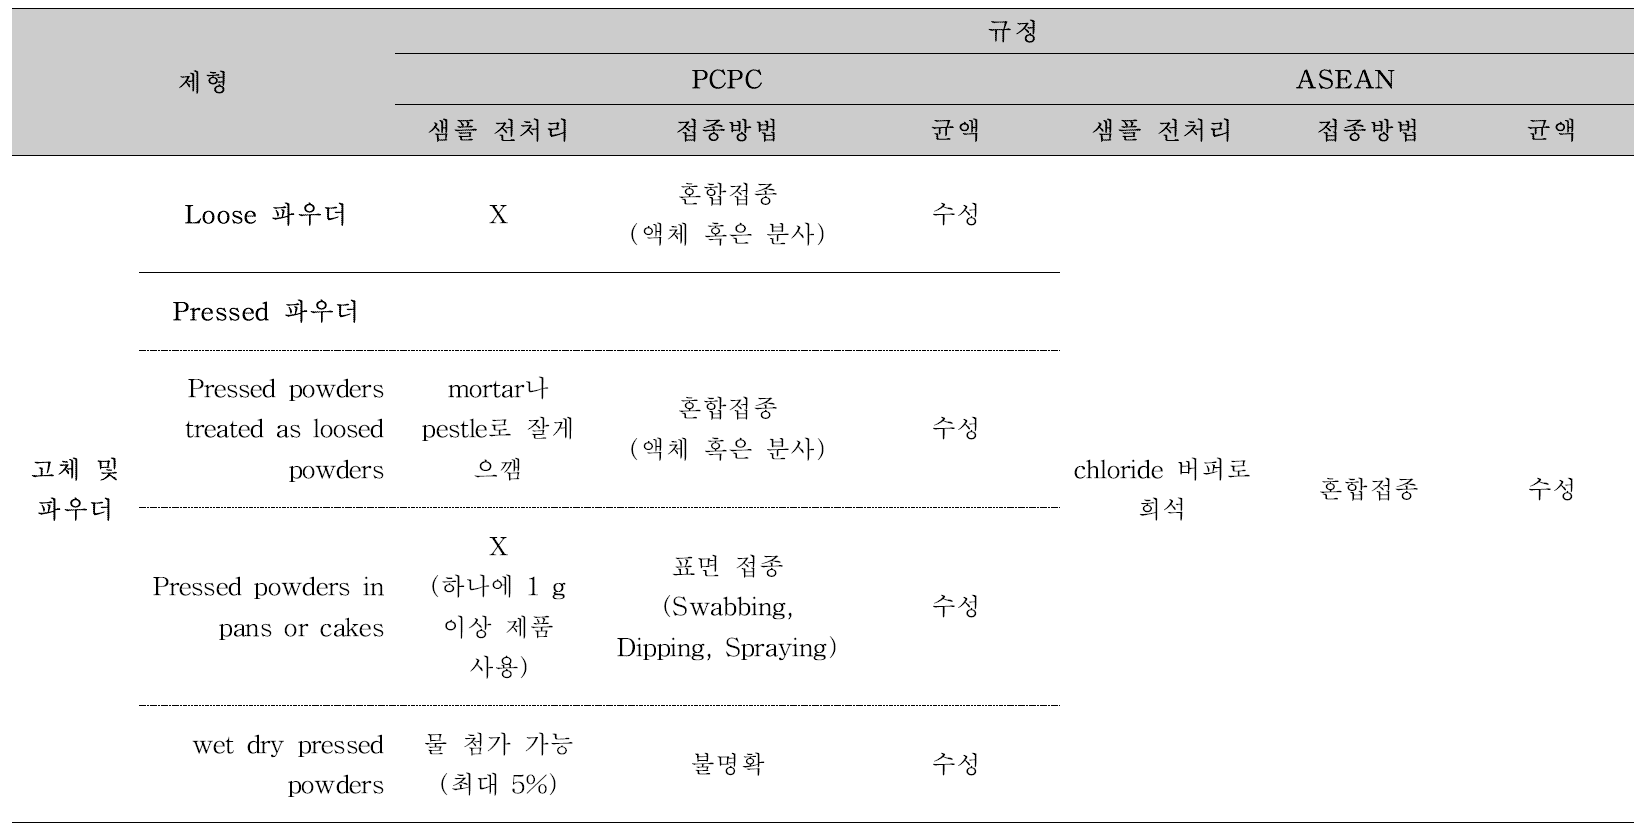 고체 및 파우더에 대한 방부력 시험법 비교(PCPC, ASEAN 대상)